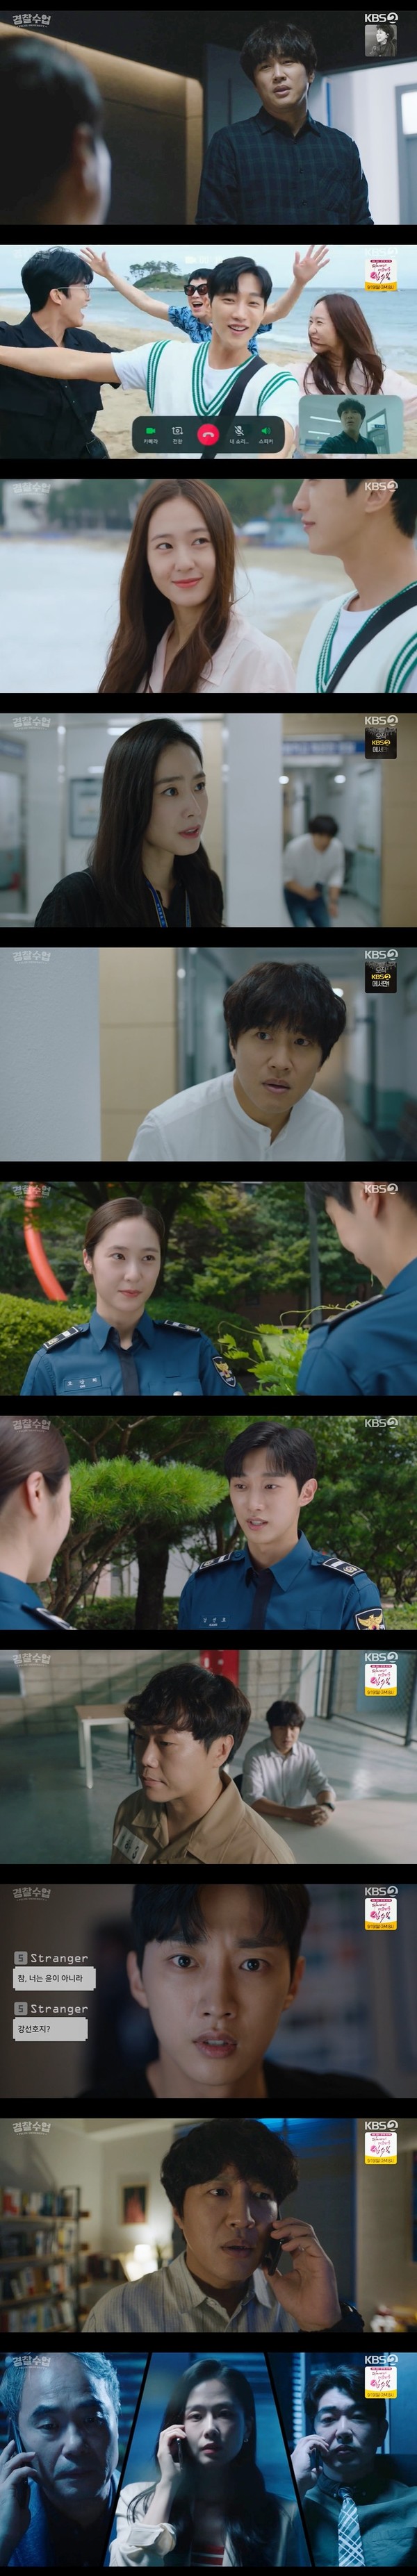 사진 제공: KBS 2TV 월화드라마 '경찰수업' 방송 캡처 